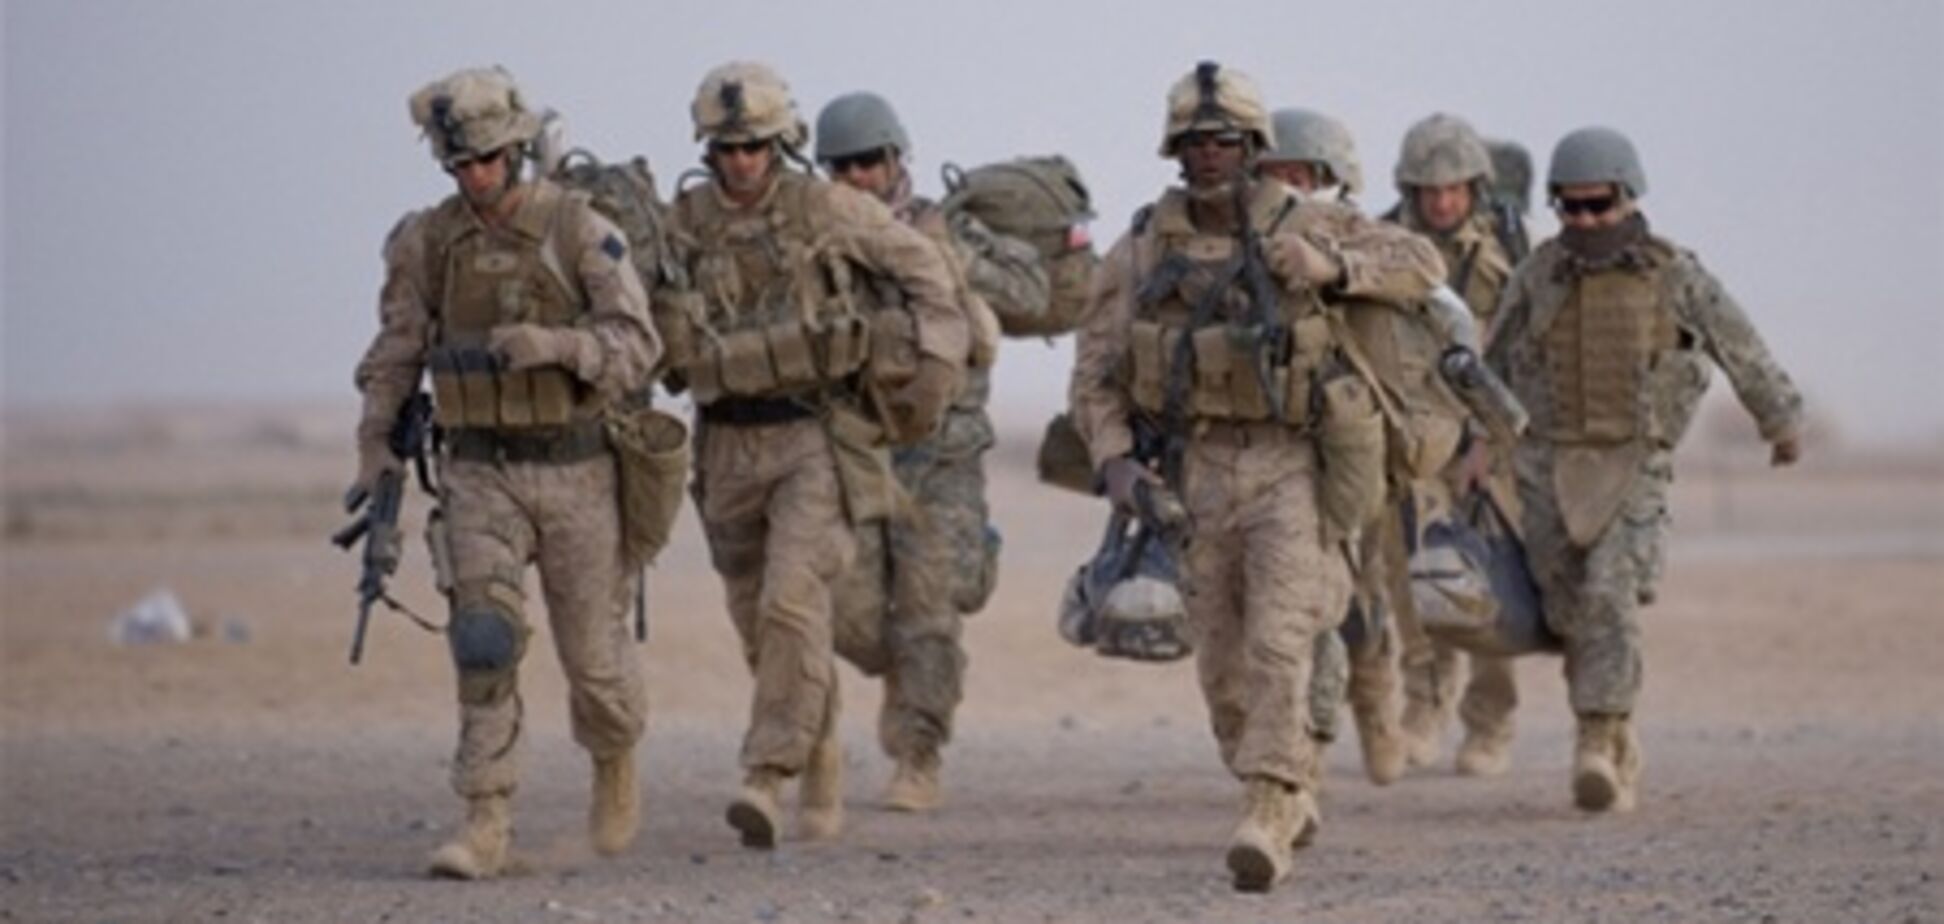 Америка начала вывод своих войск из Афганистана